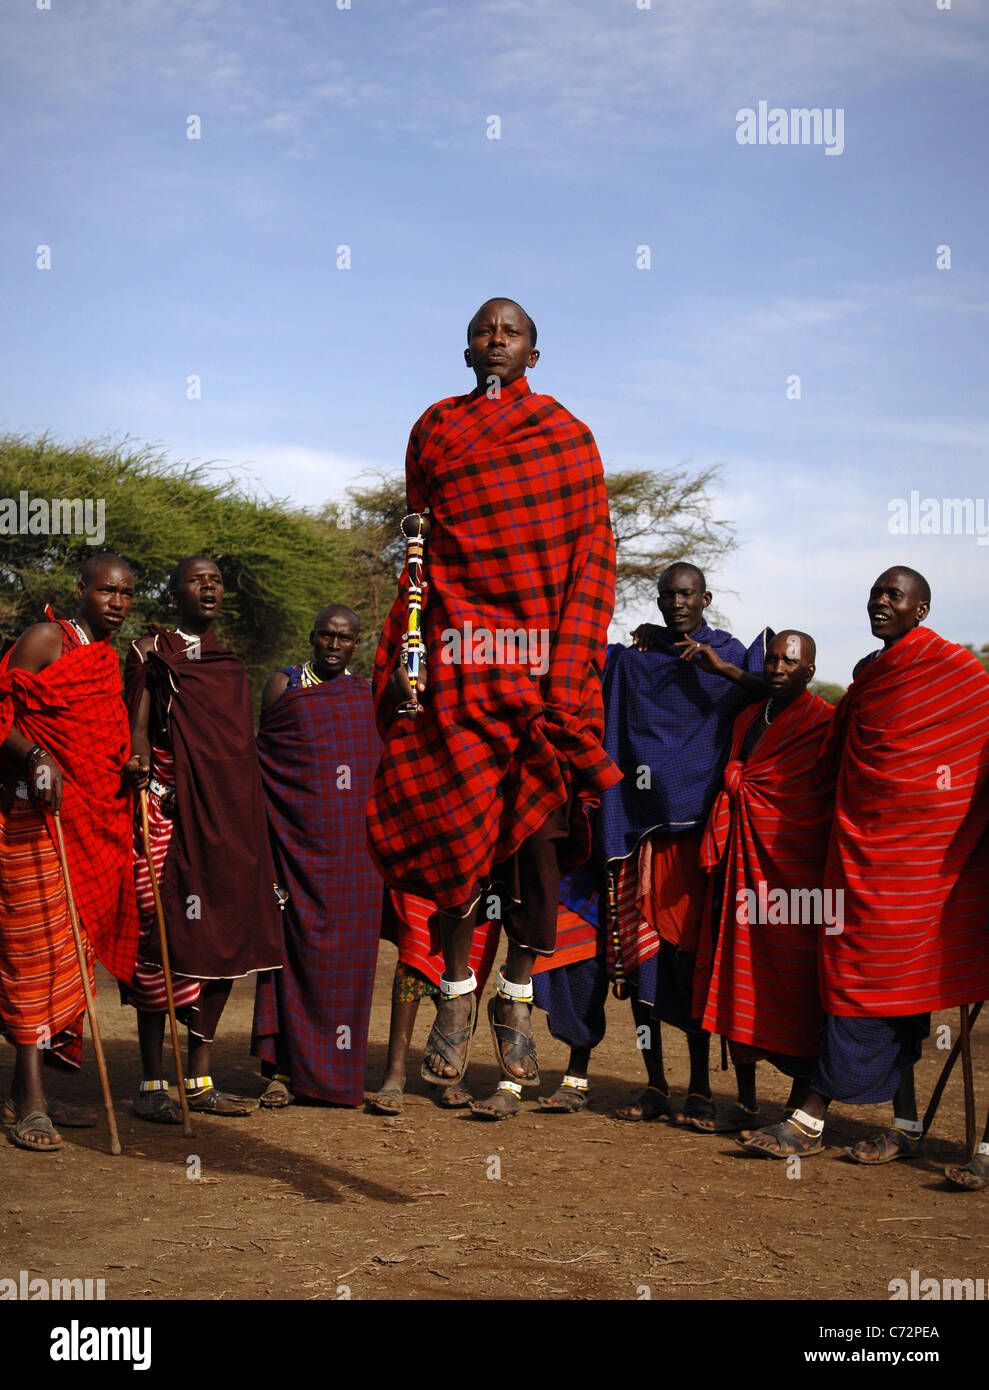 Afrique.La Tanzanie. 5 mars 2009. Village Massaï. La scène de danse de guerrier Masai,Tanzanie, Afrique de l'Est. Banque D'Images